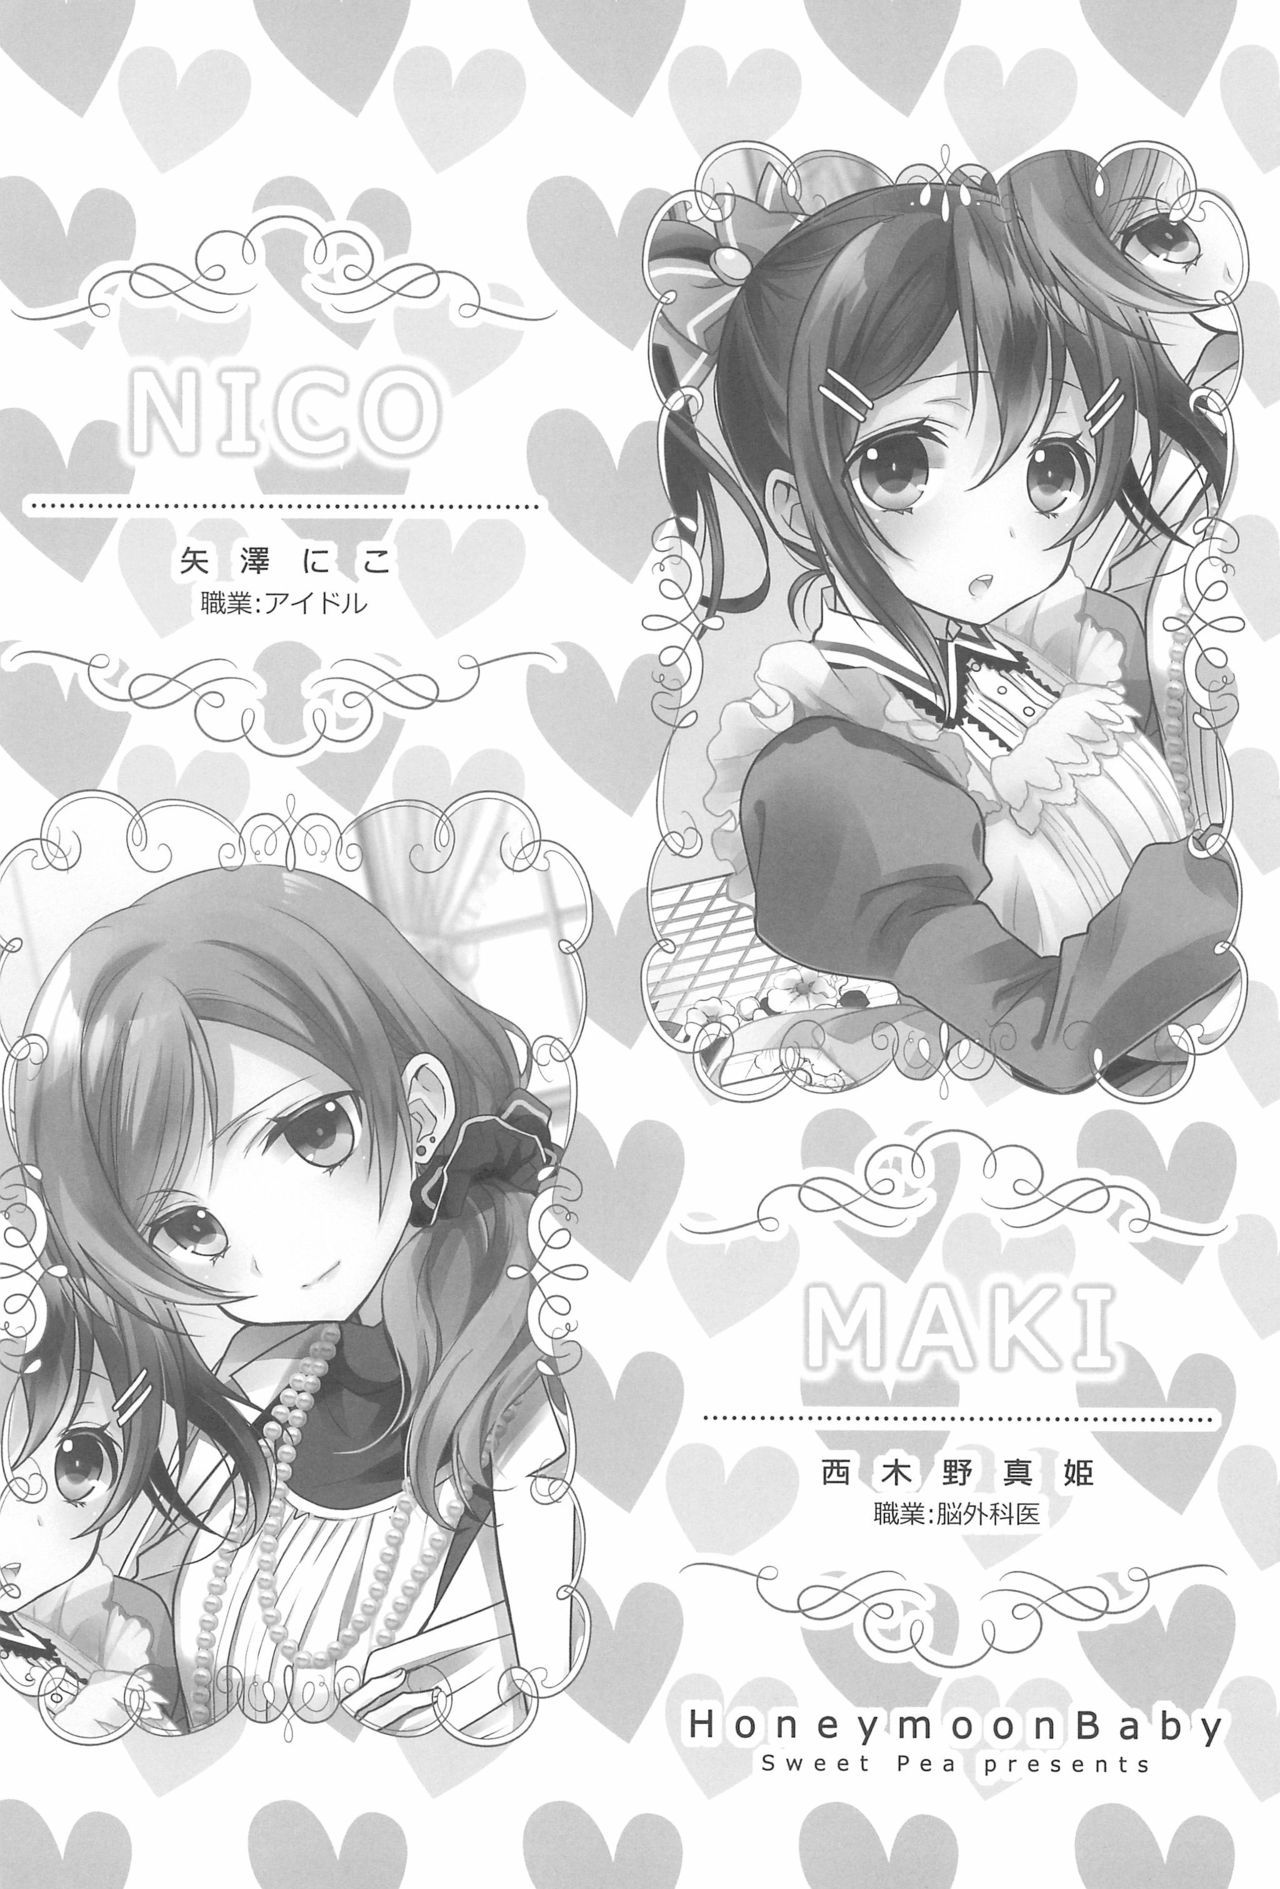 NICO＆amp;マキコレクション3